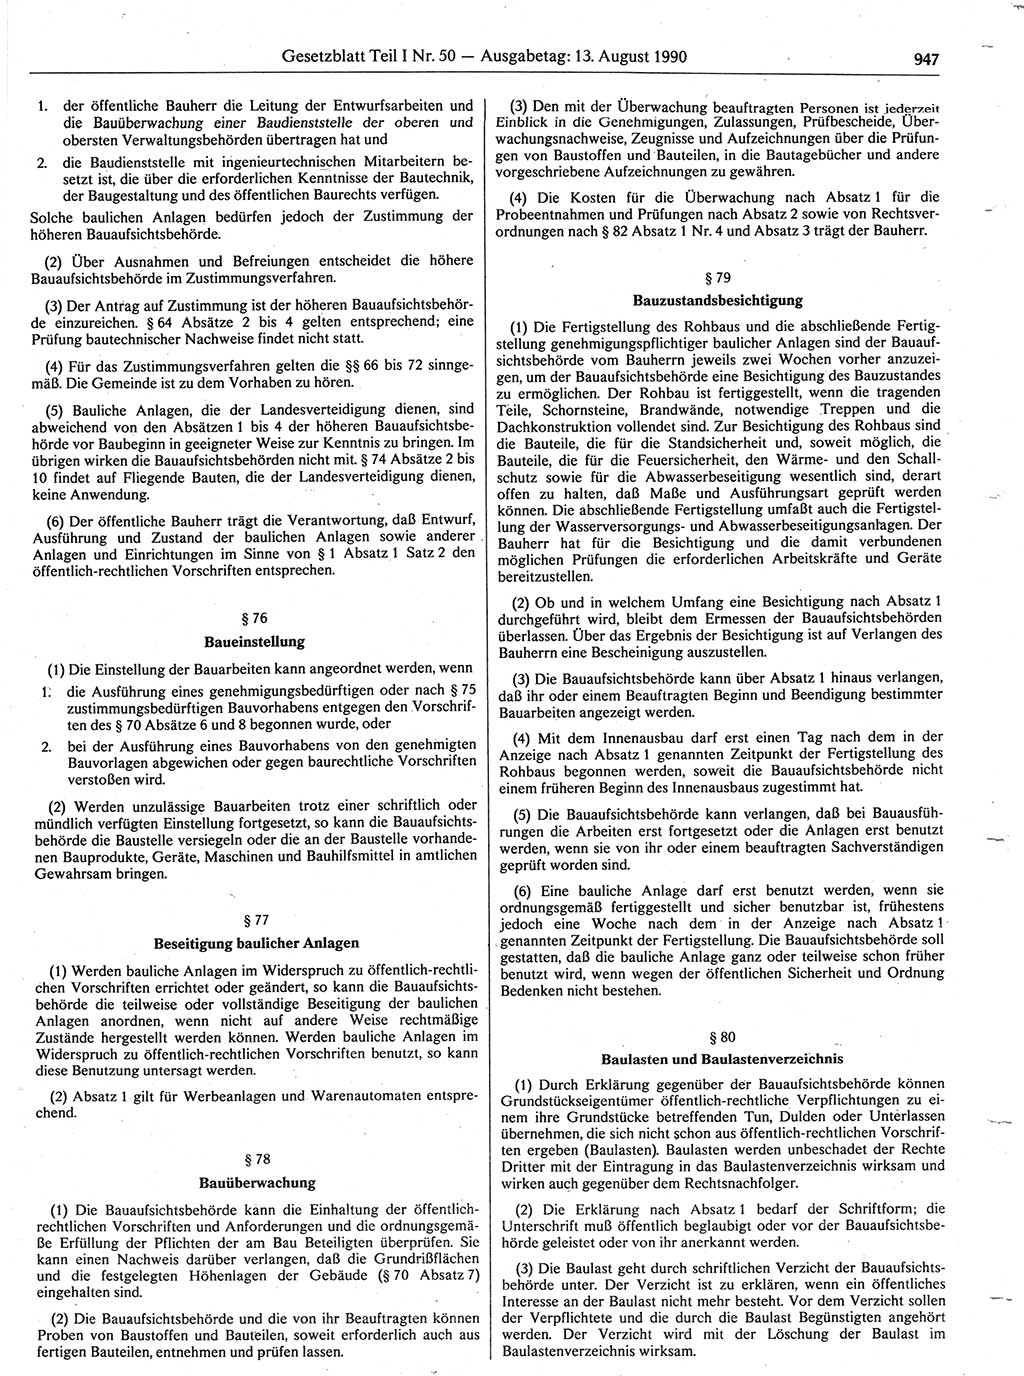 Gesetzblatt (GBl.) der Deutschen Demokratischen Republik (DDR) Teil Ⅰ 1990, Seite 947 (GBl. DDR Ⅰ 1990, S. 947)